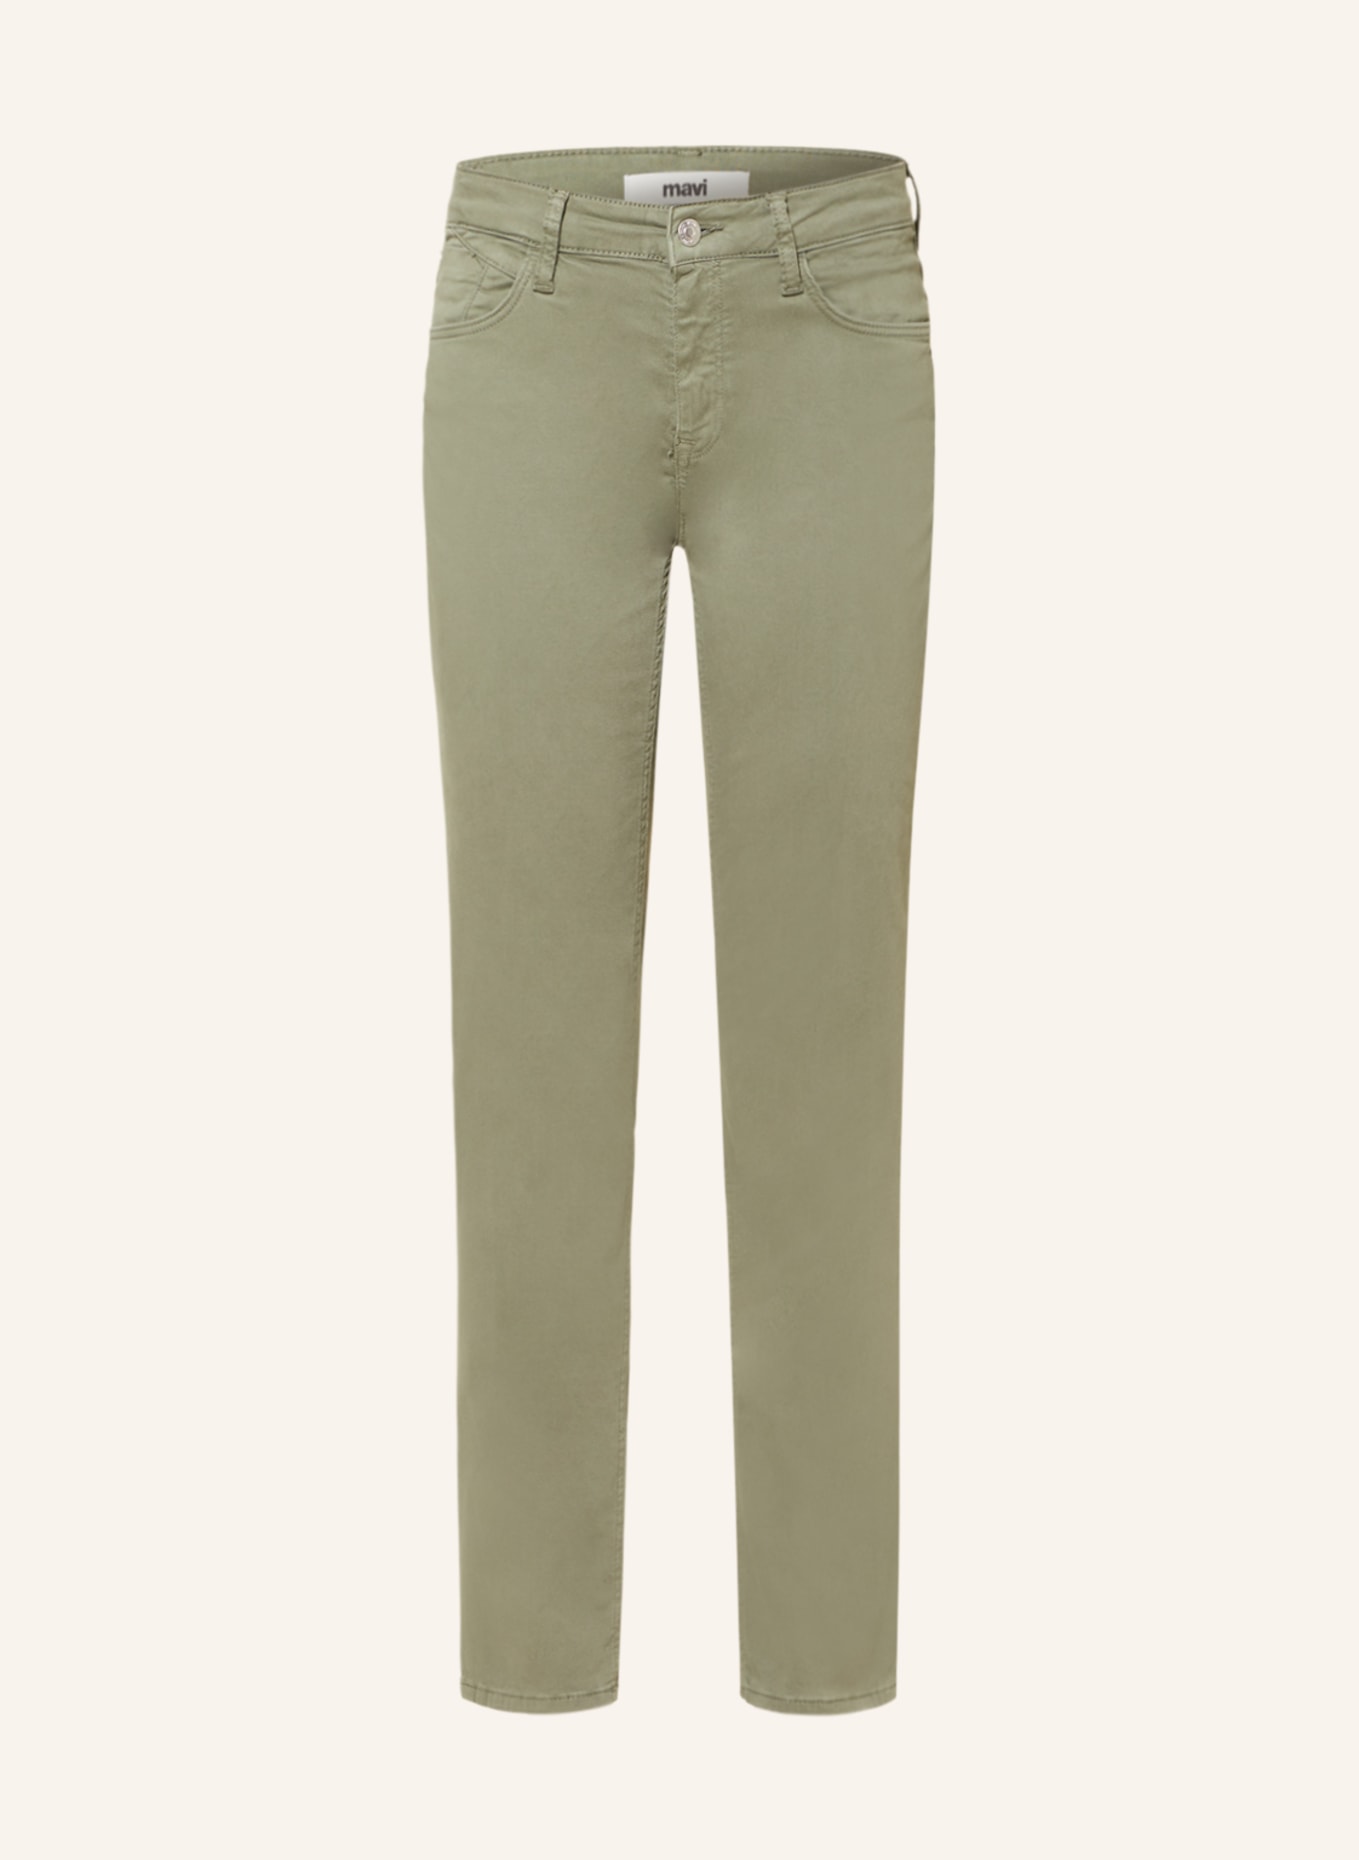 mavi Skinny Jeans SOPHIE, Farbe: 85027 beetle sateen (Bild 1)